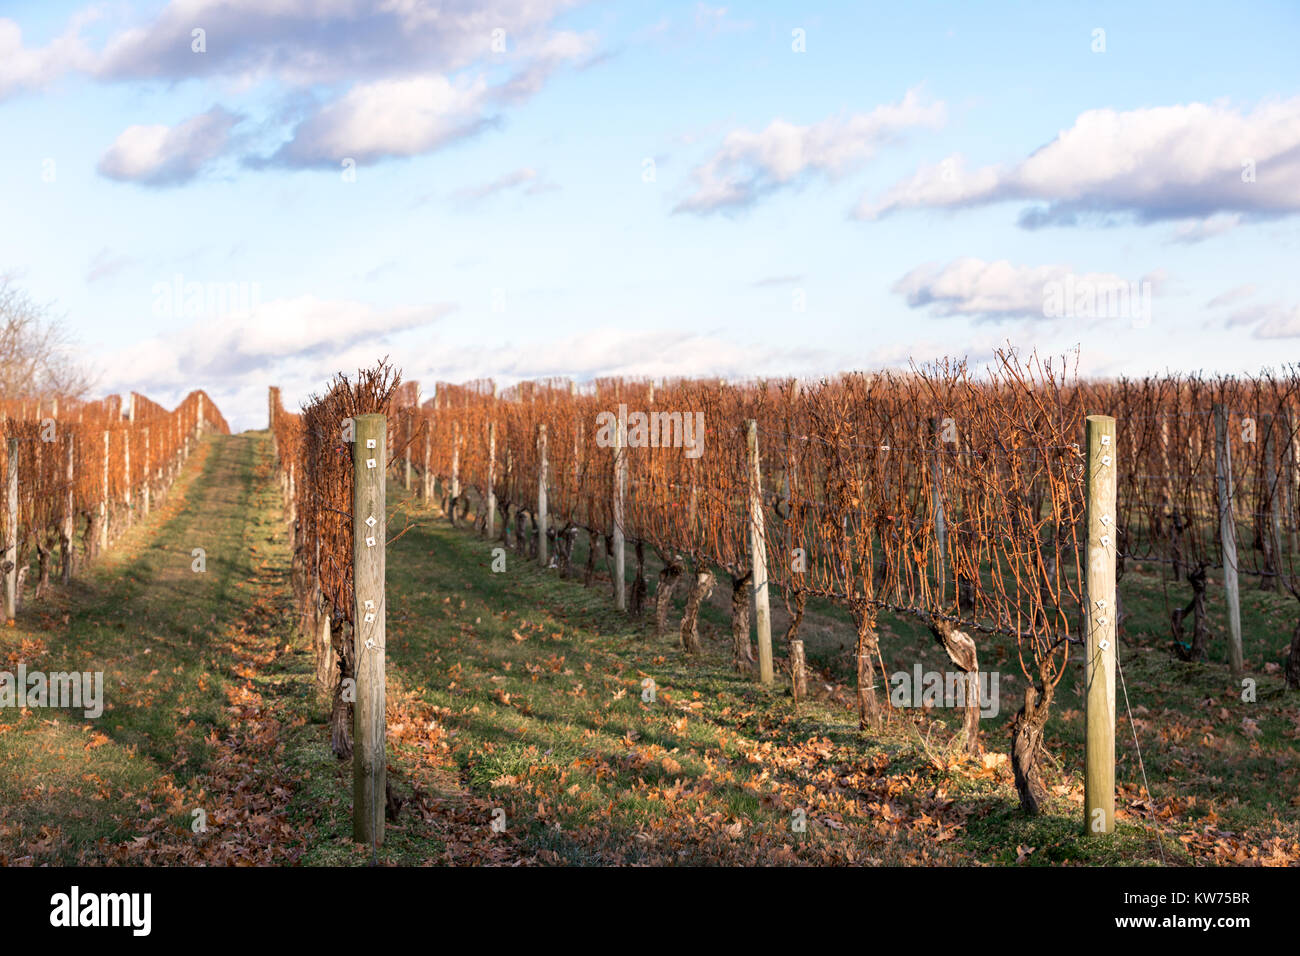 vineyard in long island, ny Stock Photo